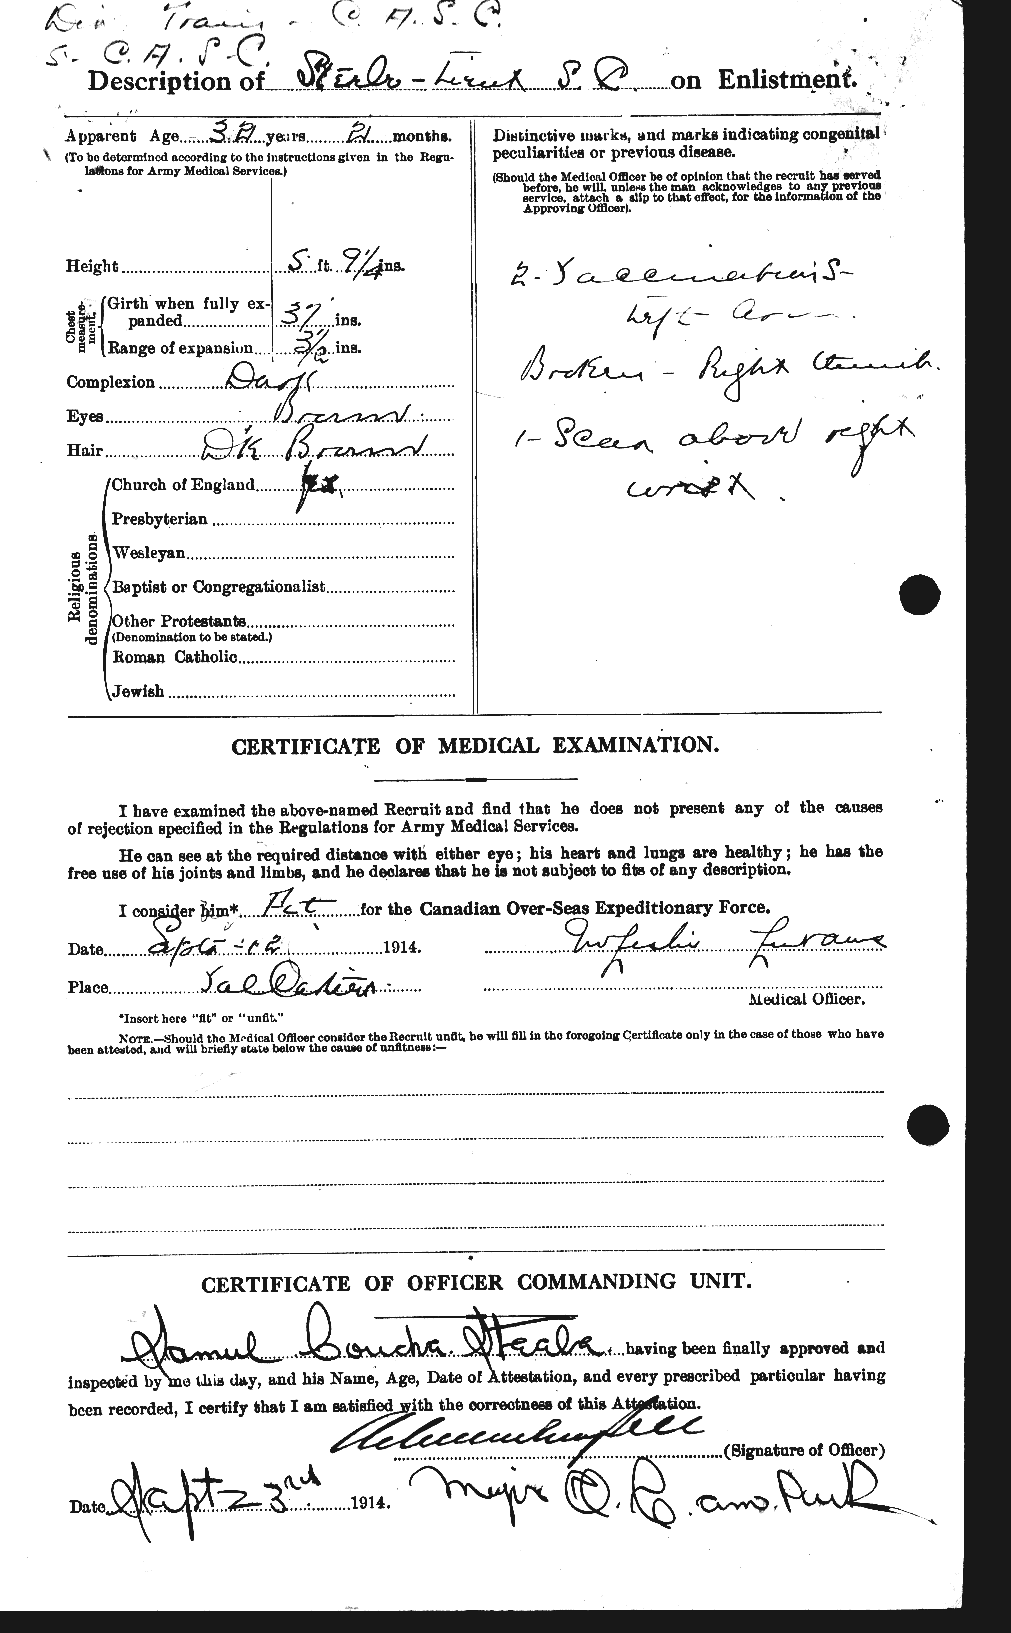 Dossiers du Personnel de la Première Guerre mondiale - CEC 115314b